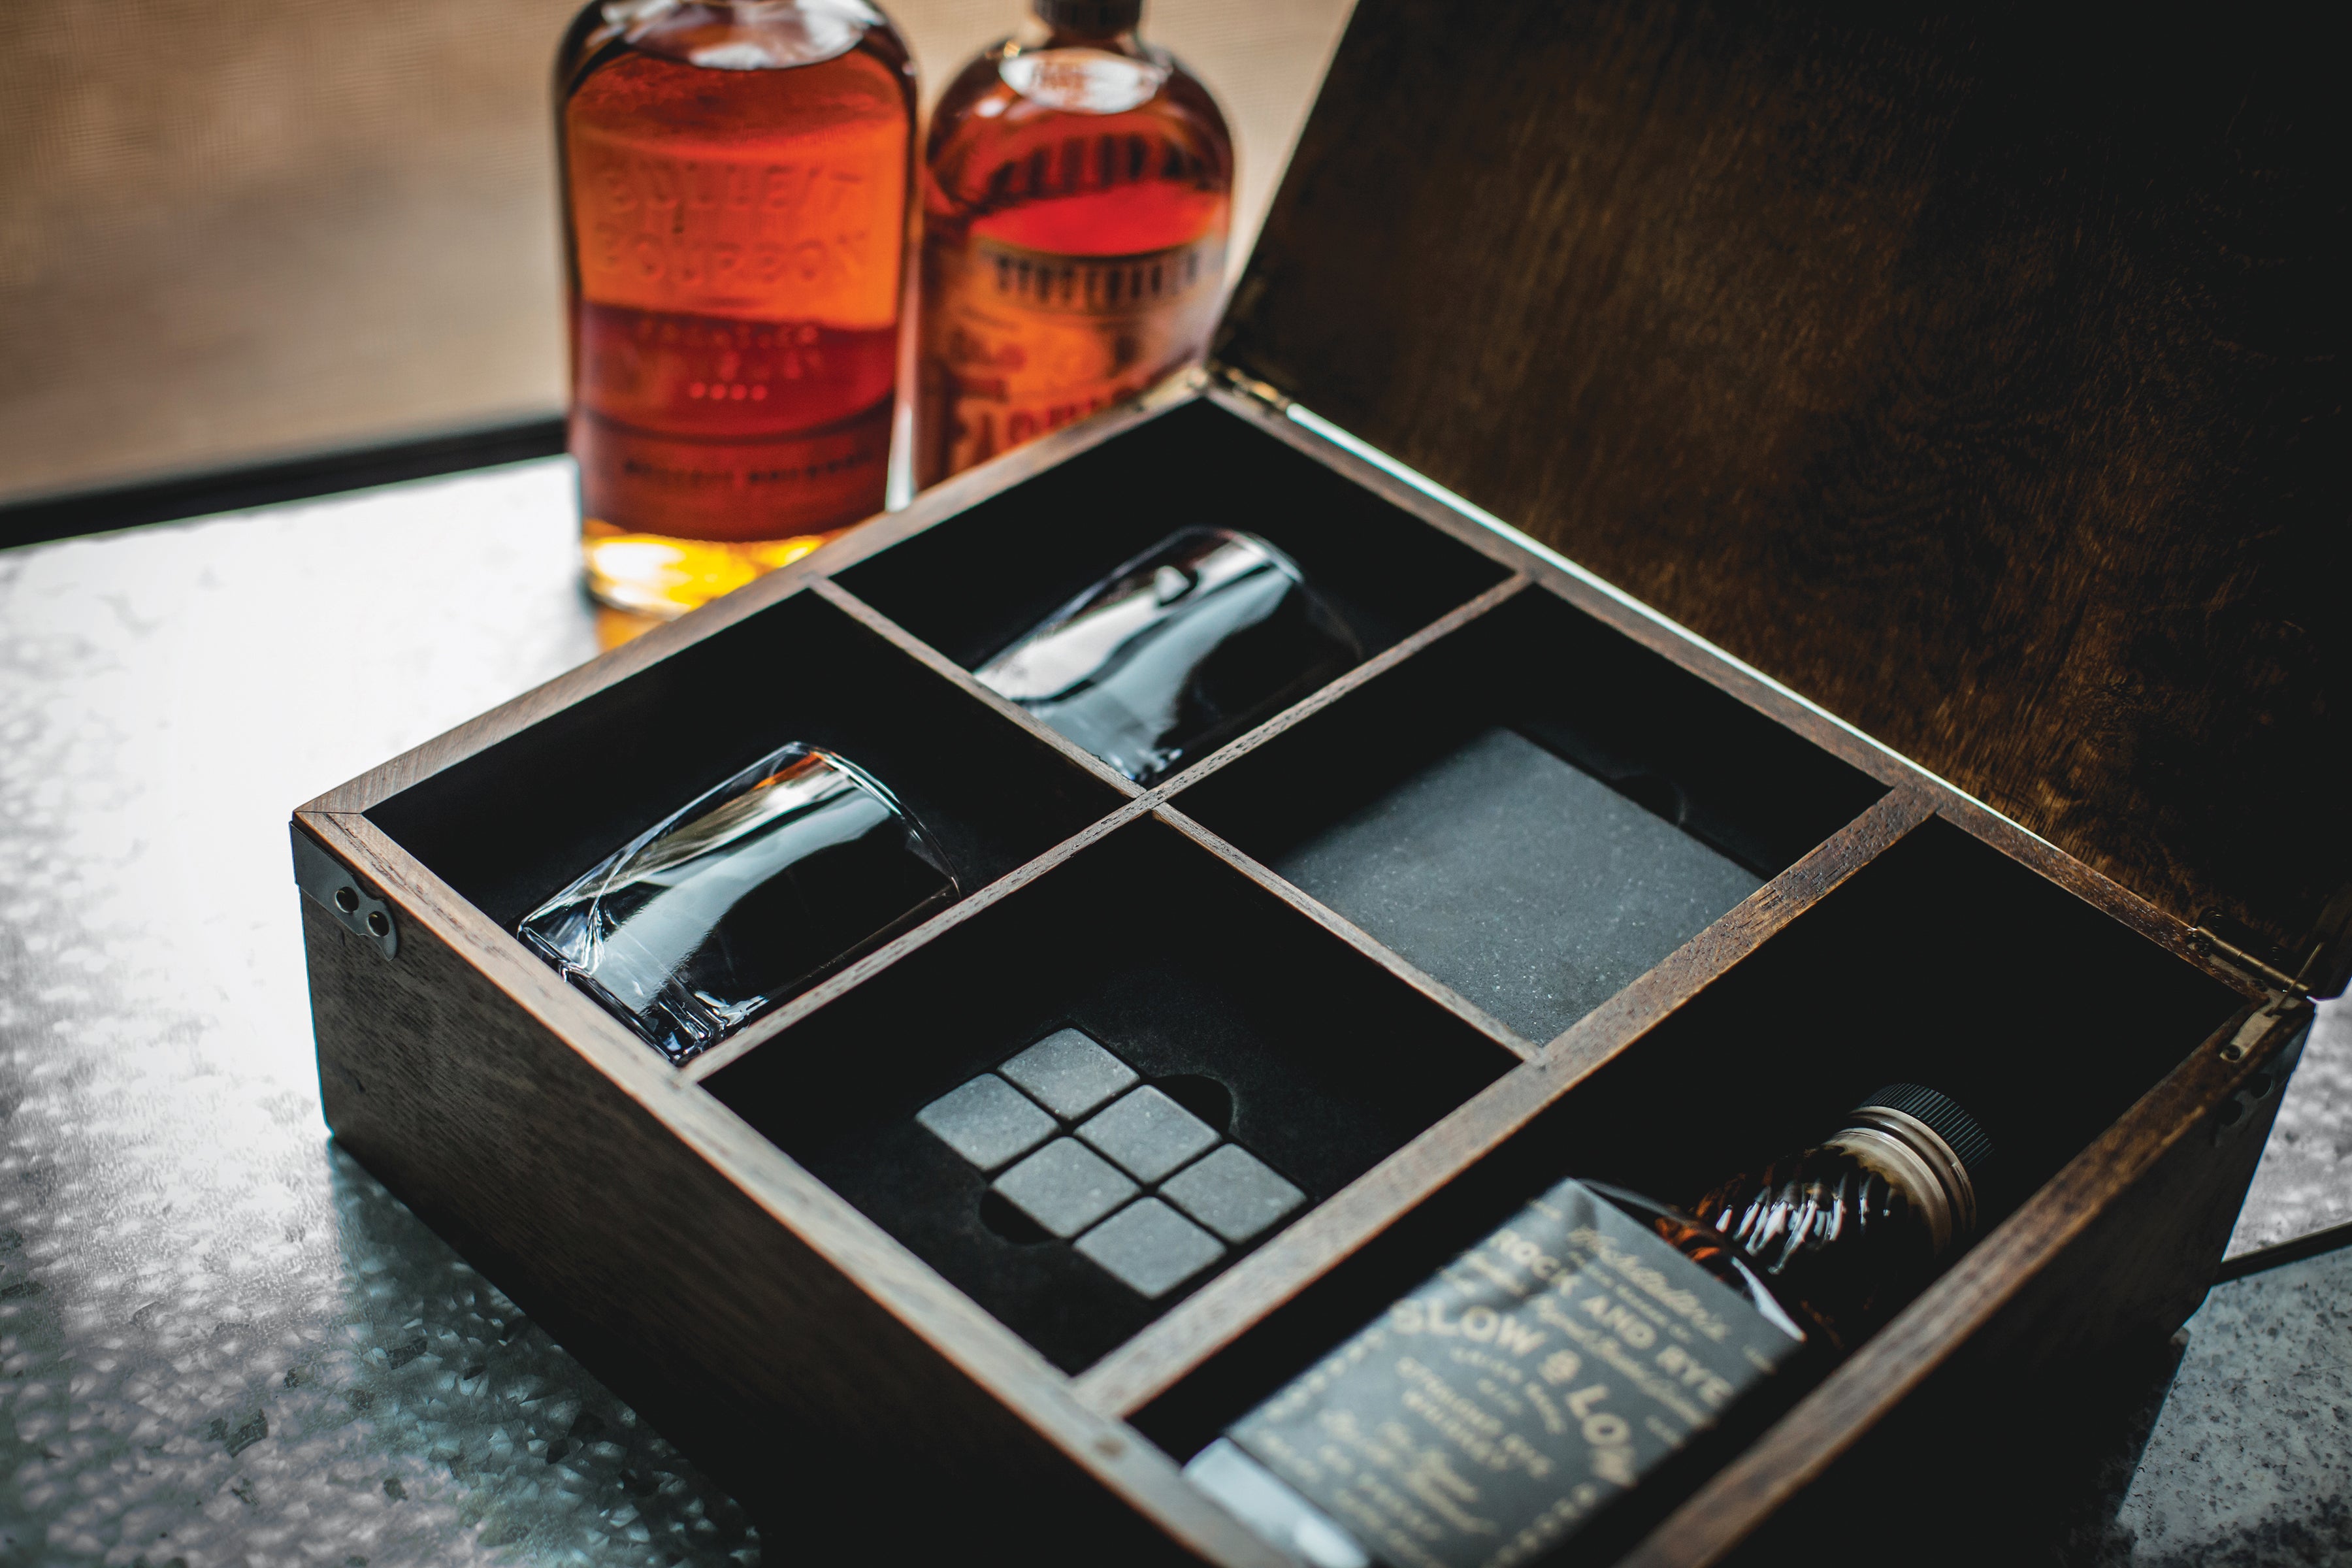 whiskey gift set